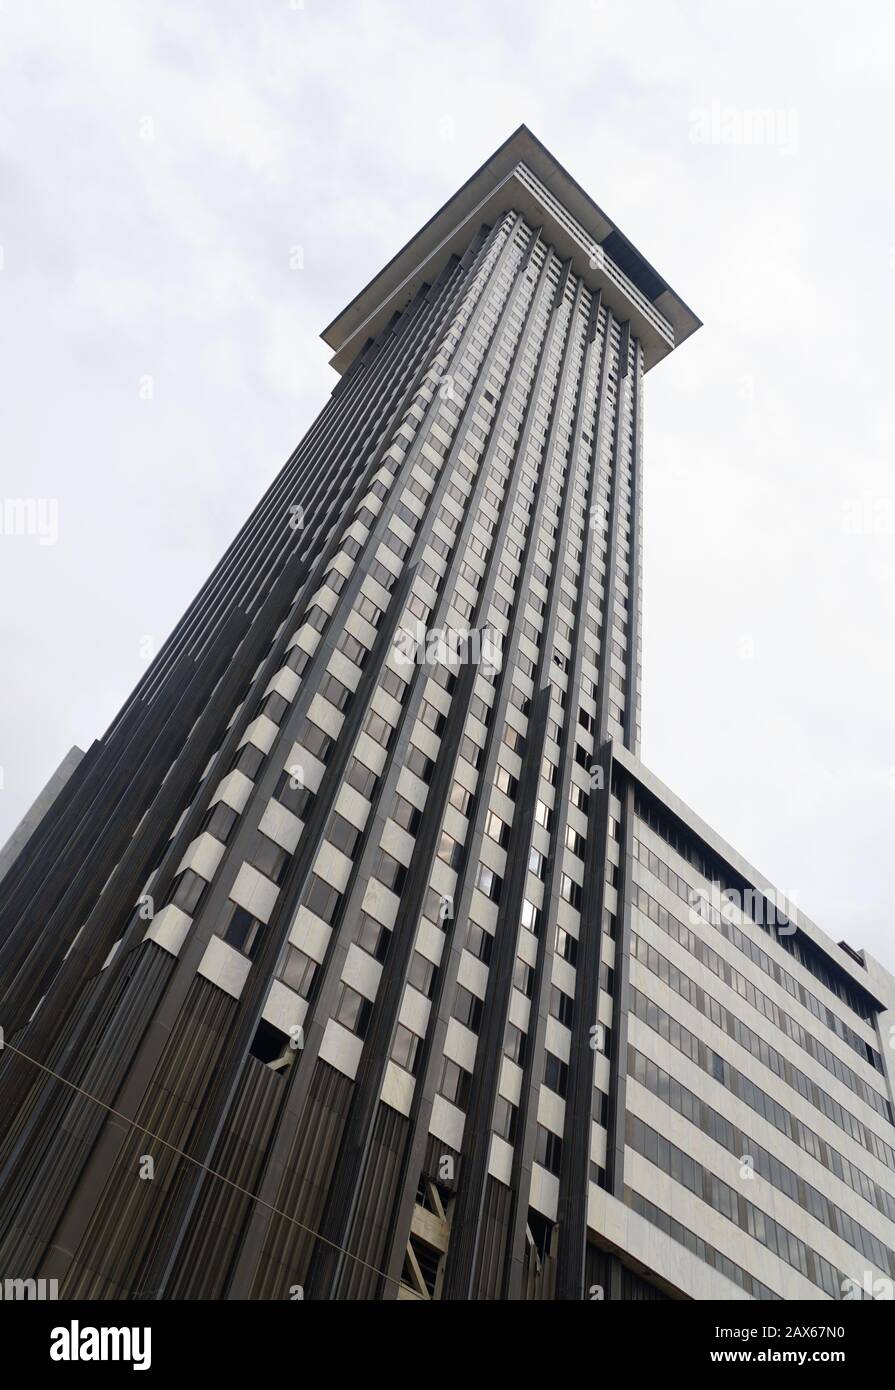 Nueva Orleans, Louisiana, U.S.A - 4 de febrero de 2020 - la Plaza Tower, la tercera torre más alta de la ciudad y ha estado vacante debido a moho tóxico, asbesto Foto de stock